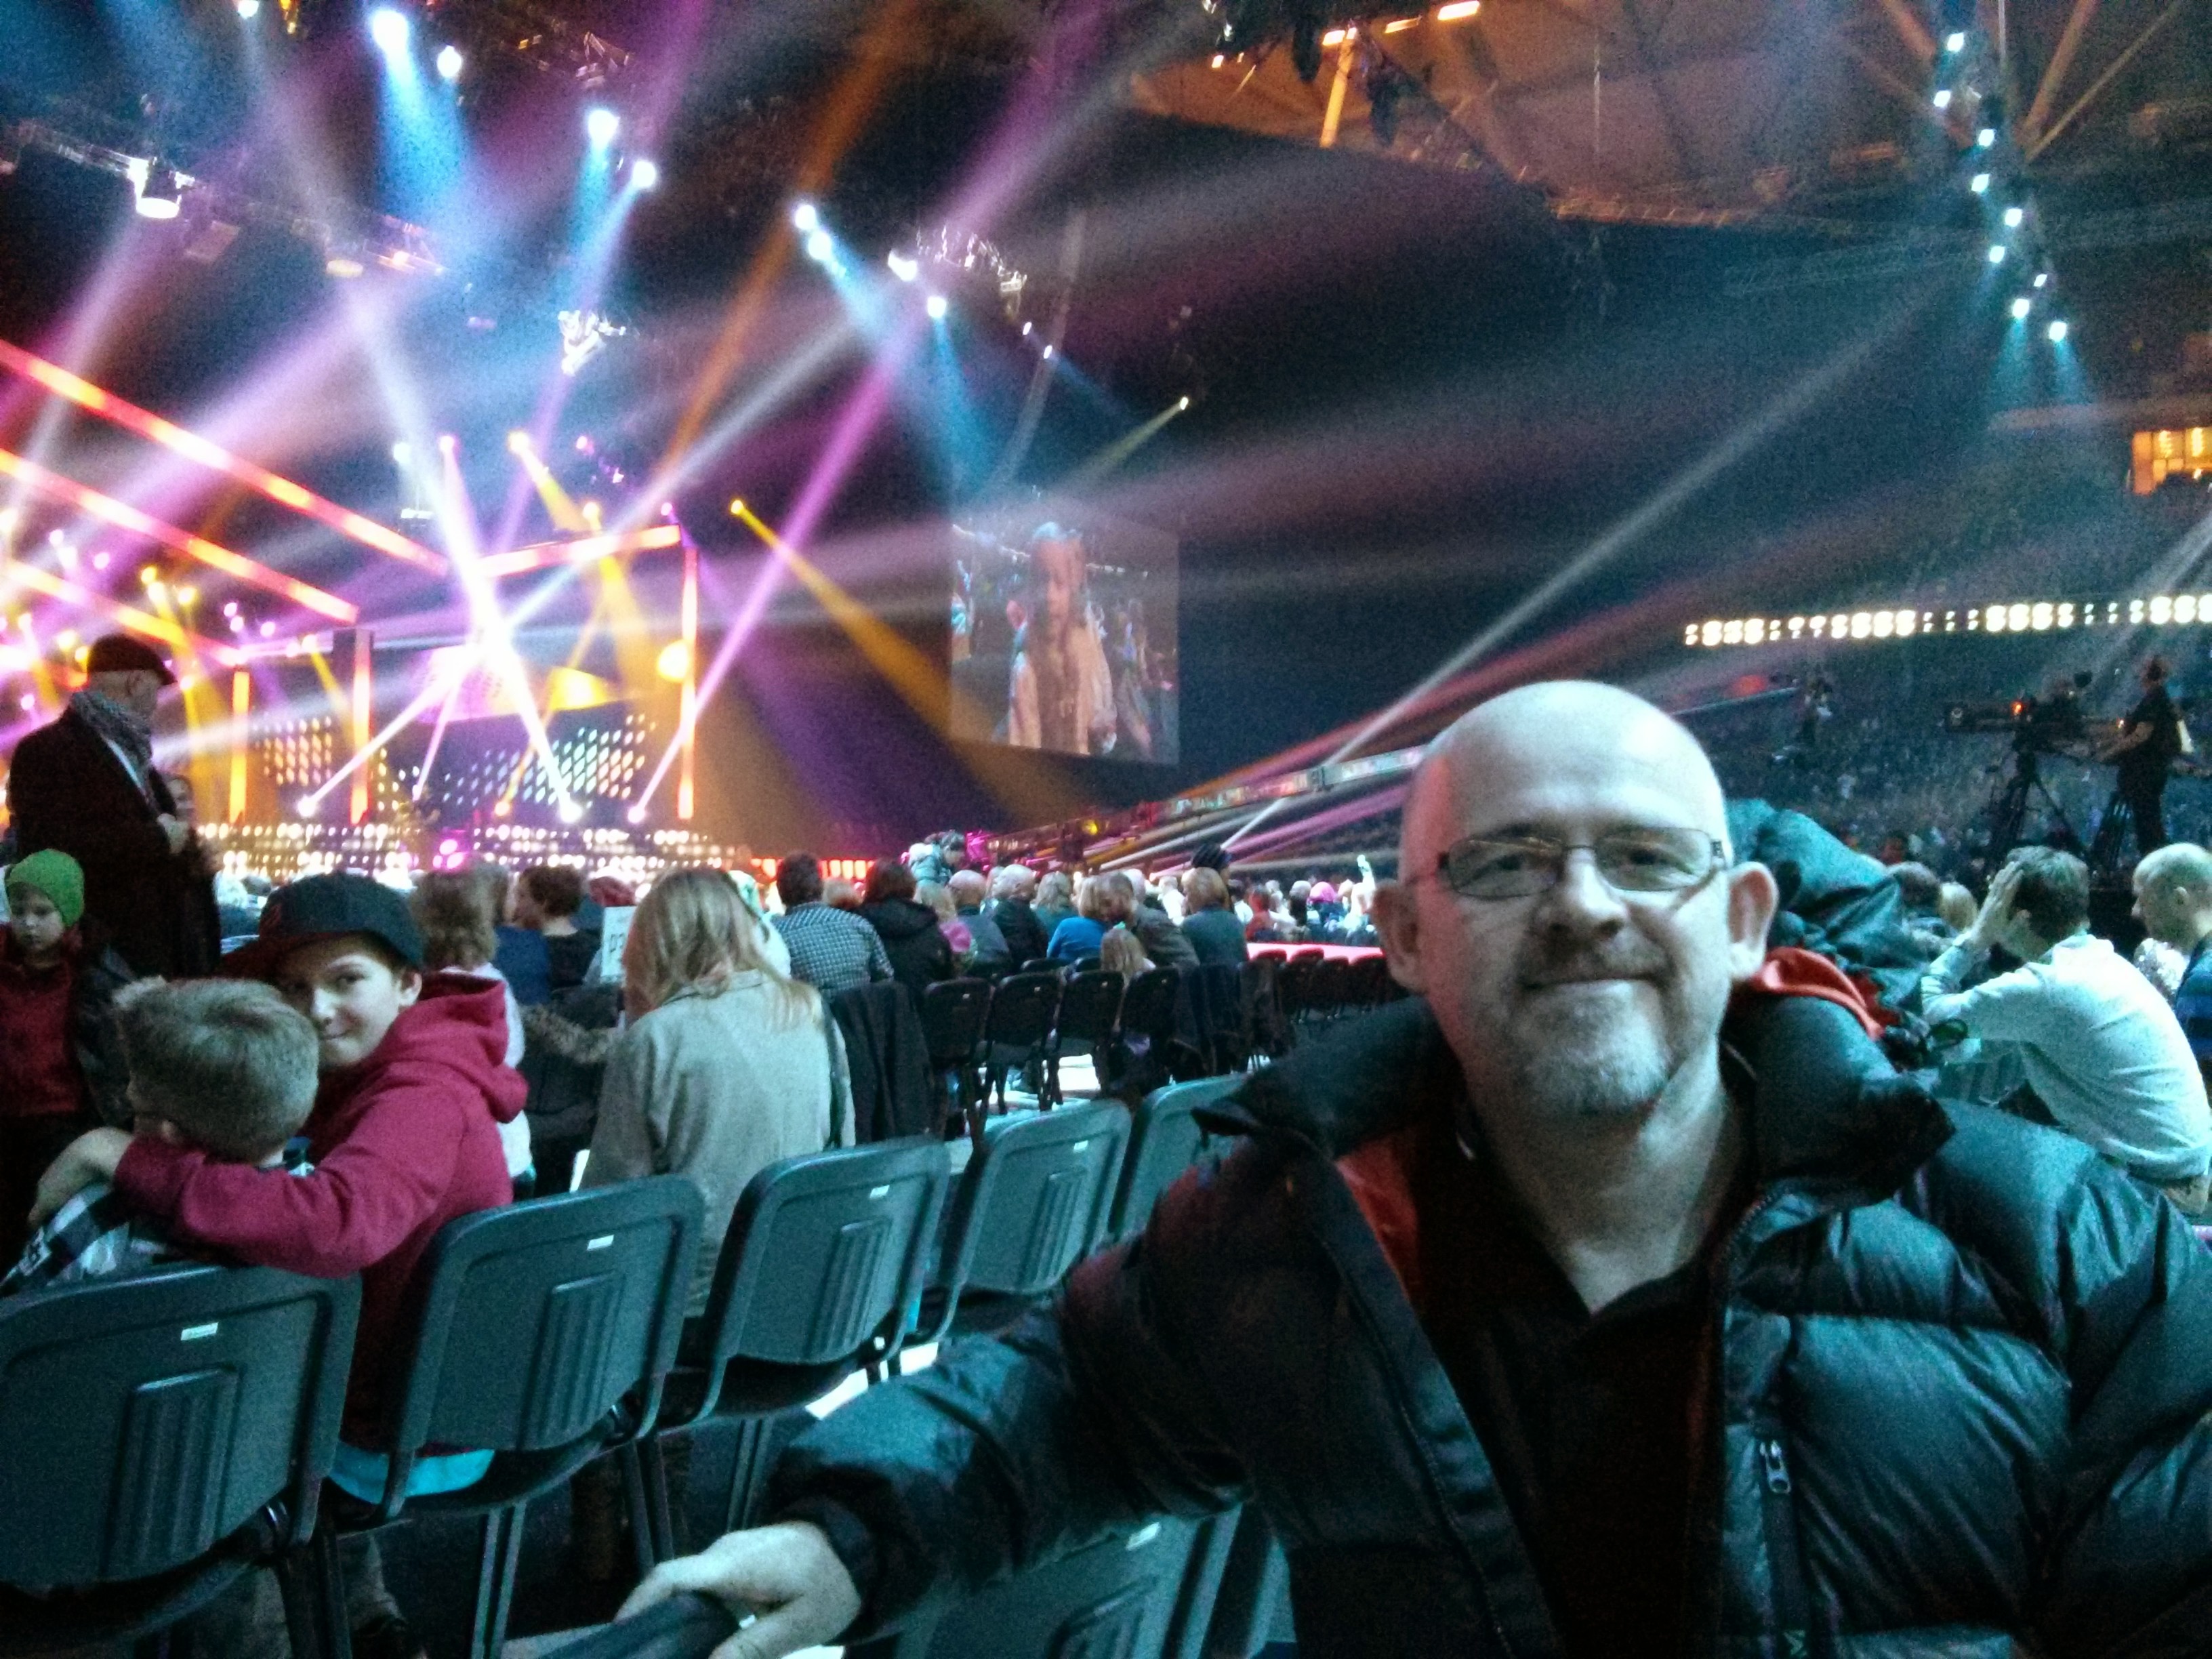 Eurovision / Melodifestivalen Moment #1: Loreen at Melodifestivalen